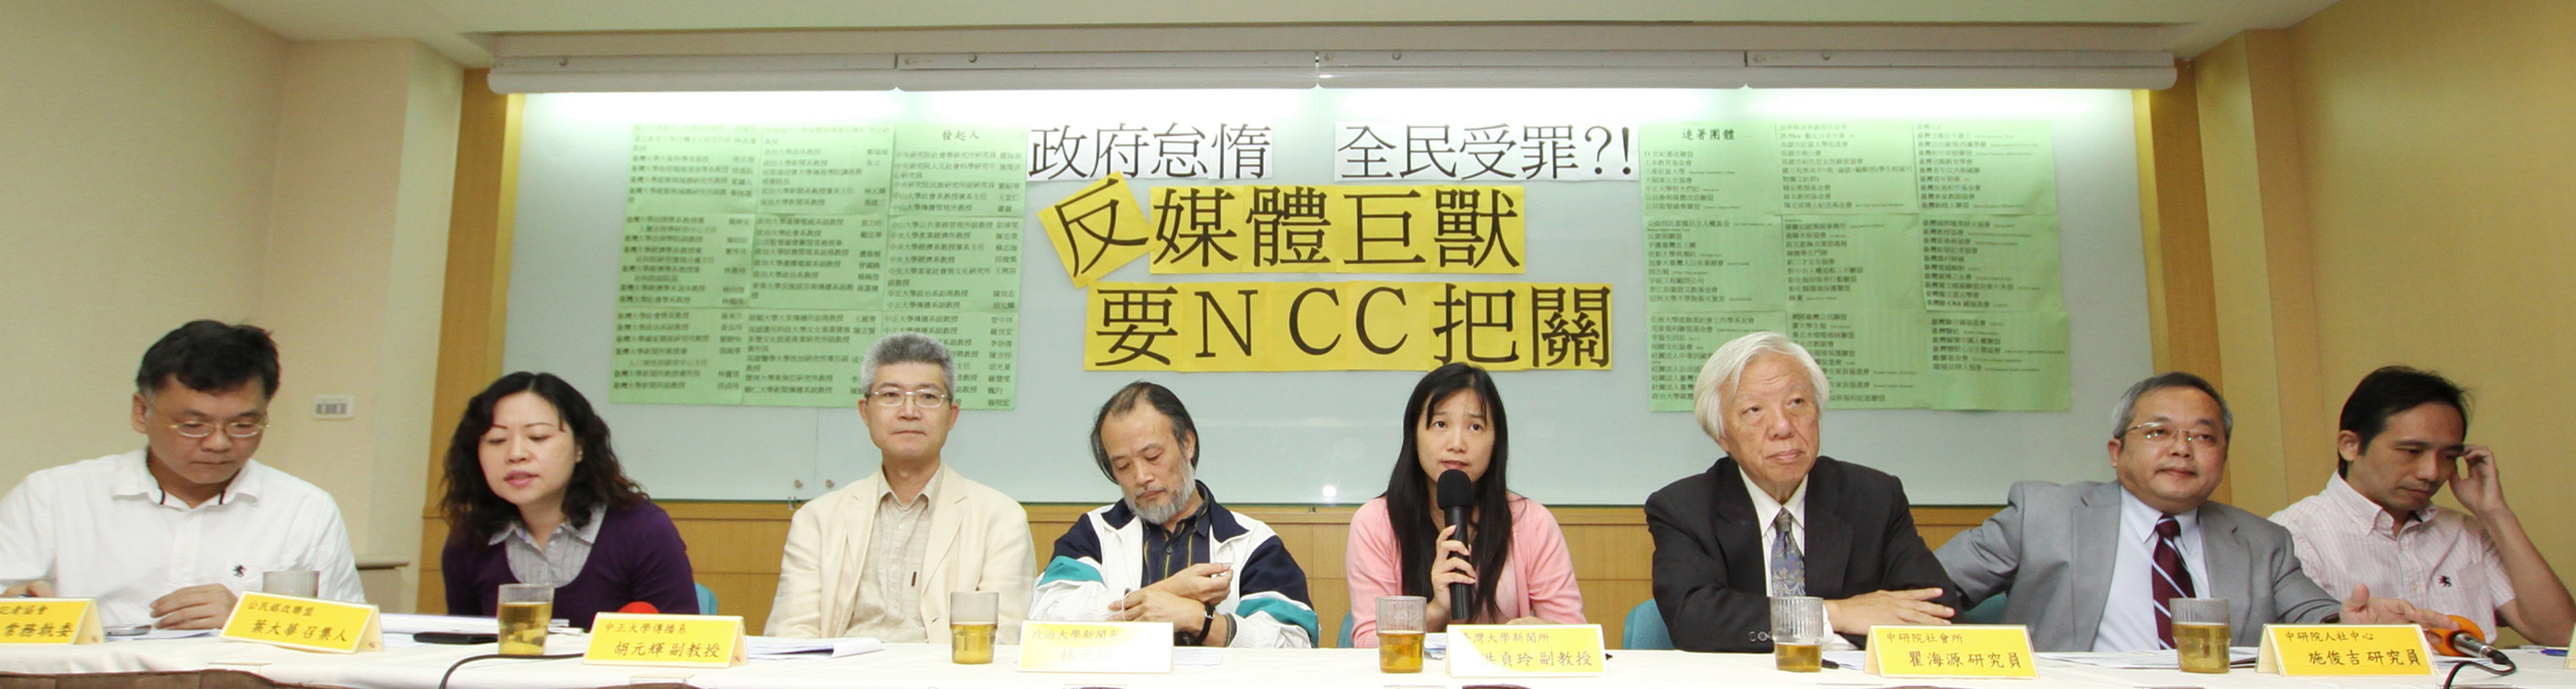 2011年10月，台湾有54位学者发起「媒体巨兽出没请注意」的反对联署。林伯东摄影